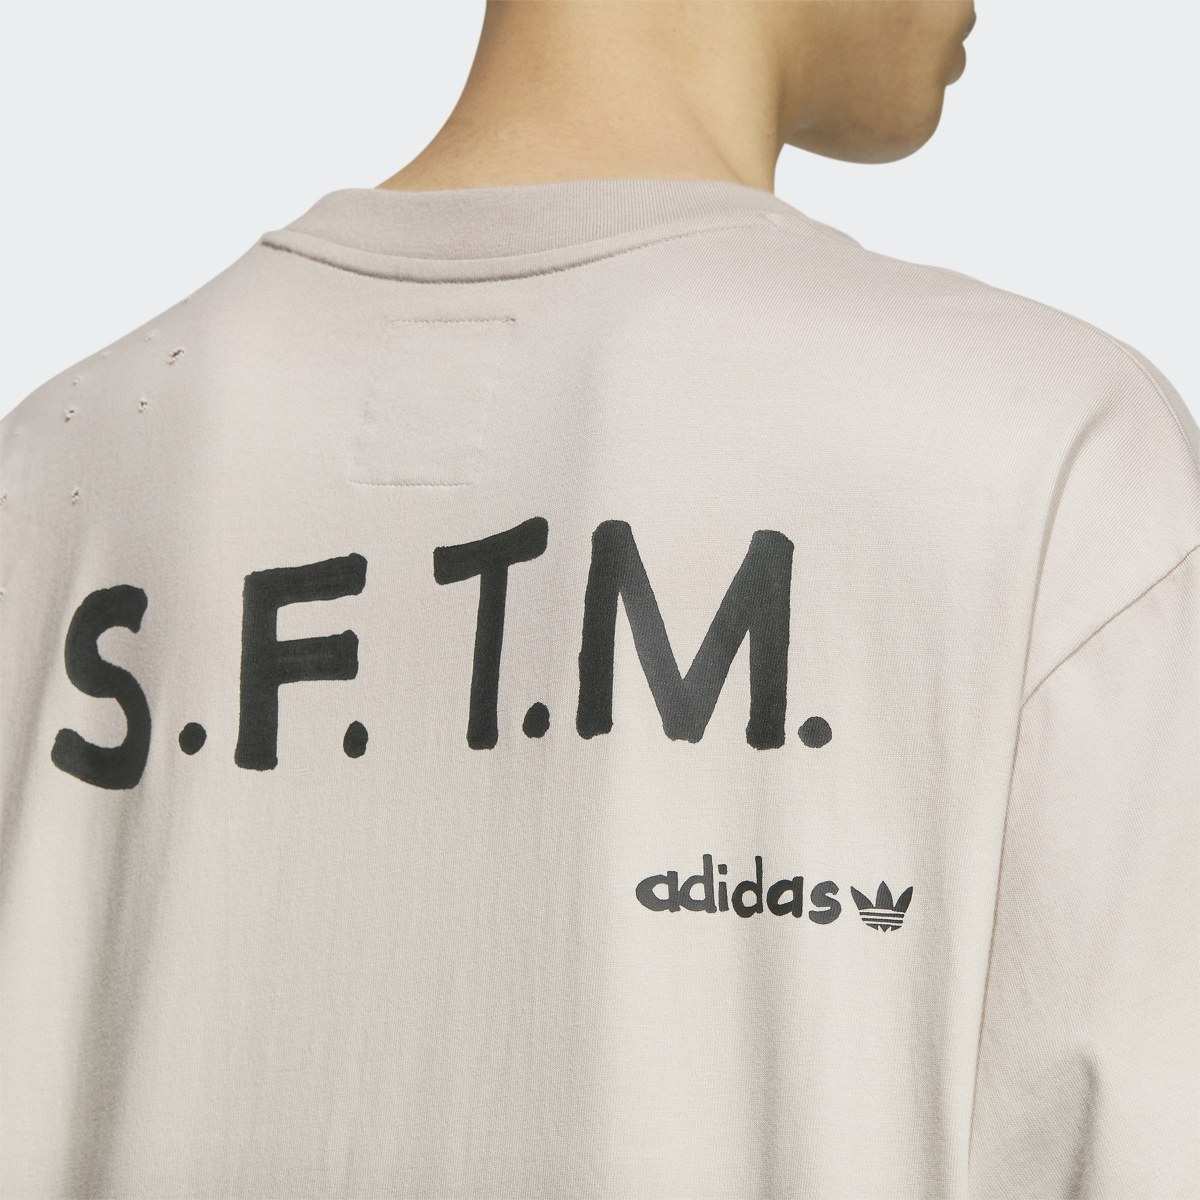 Adidas Camiseta manga corta SFTM (Género neutro). 7